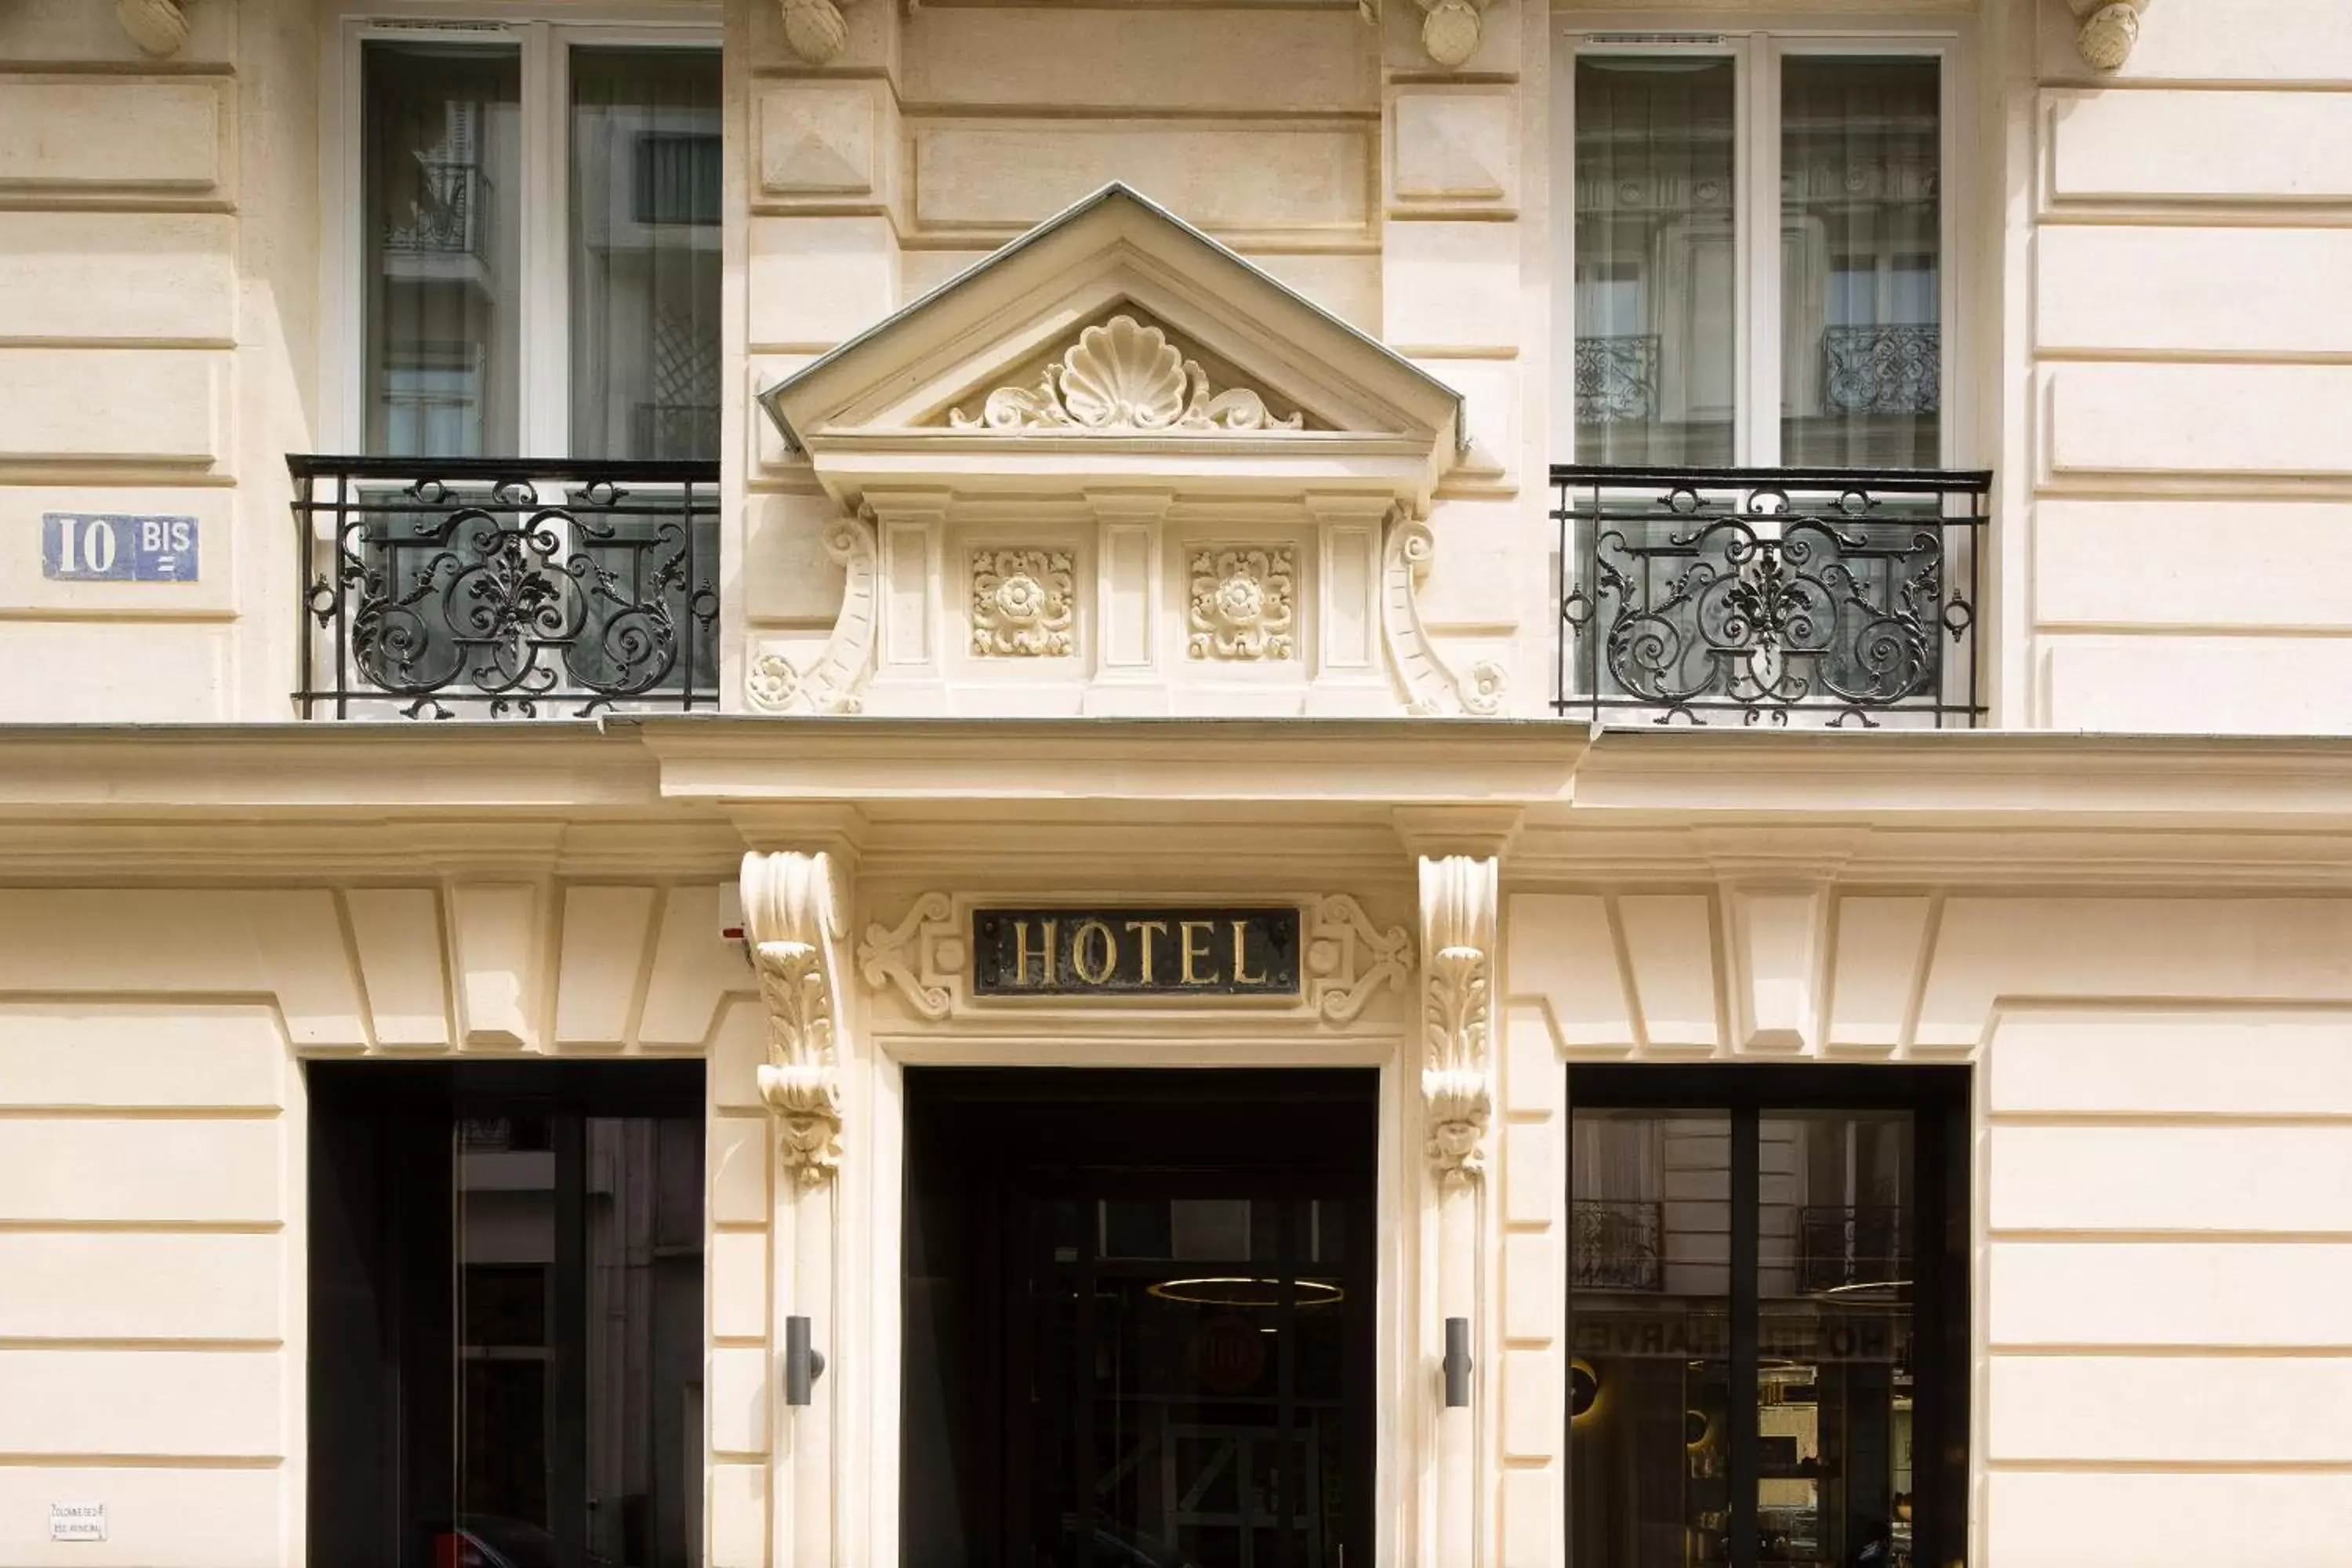 Facade/Entrance in Hotel Le 10 BIS